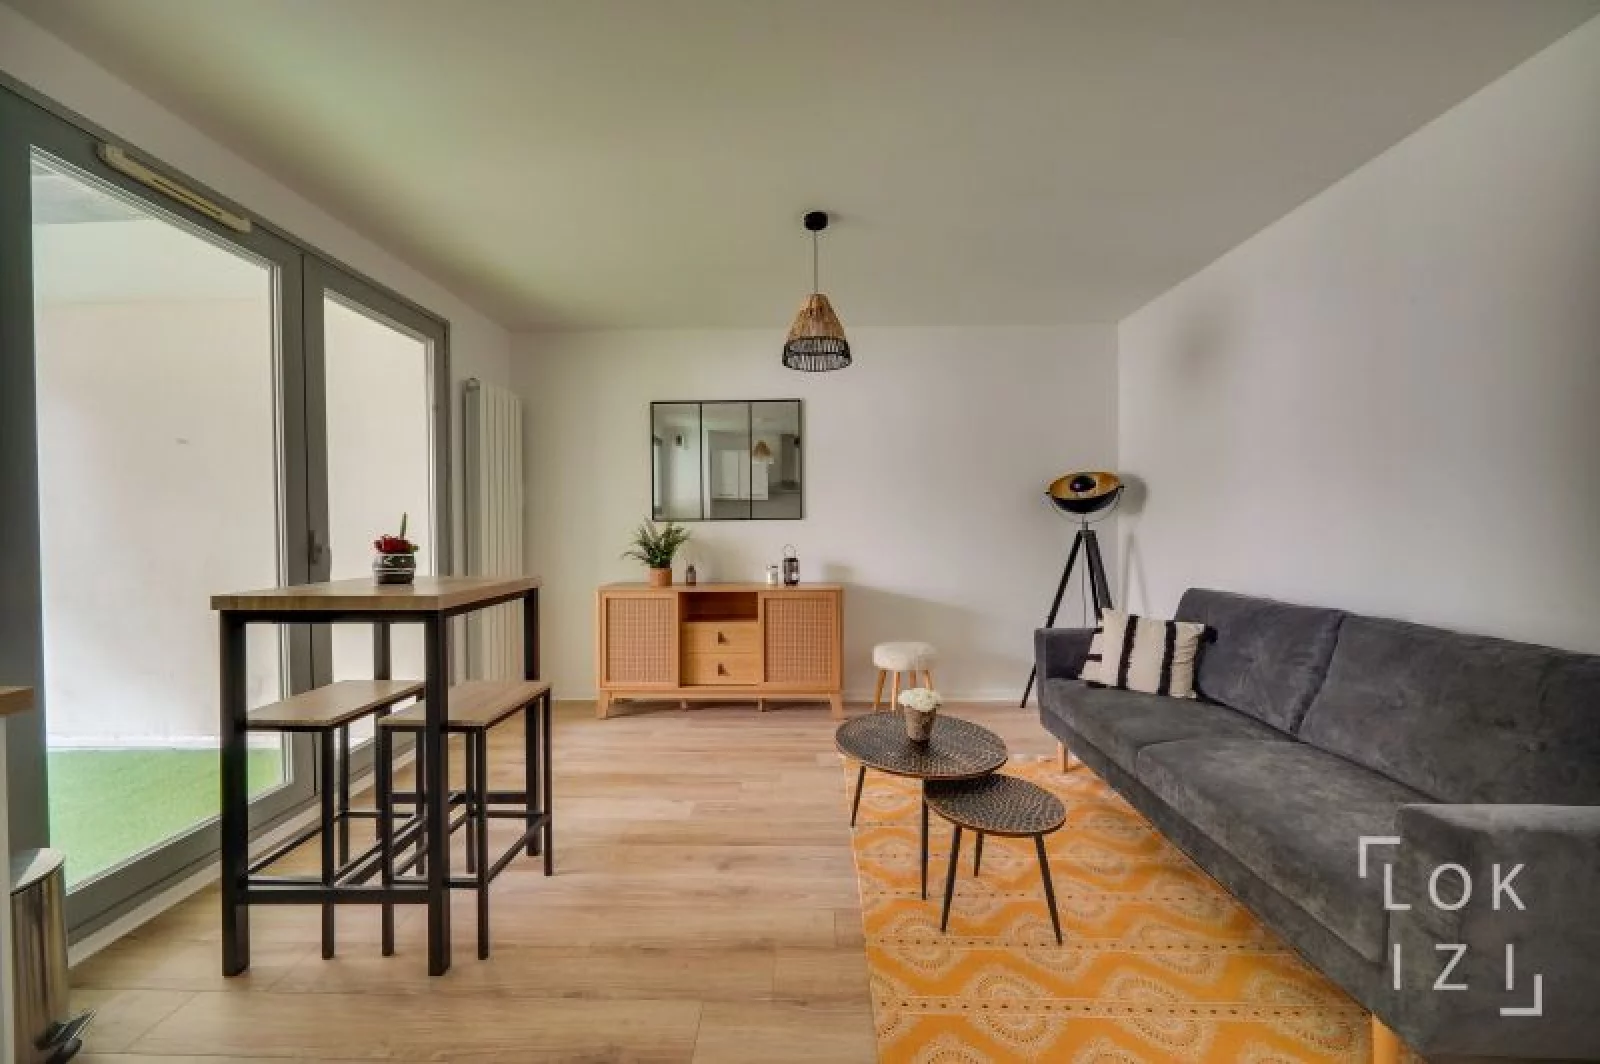 Location appartement T2 meublé 43m² (Bordeaux - Chartrons)